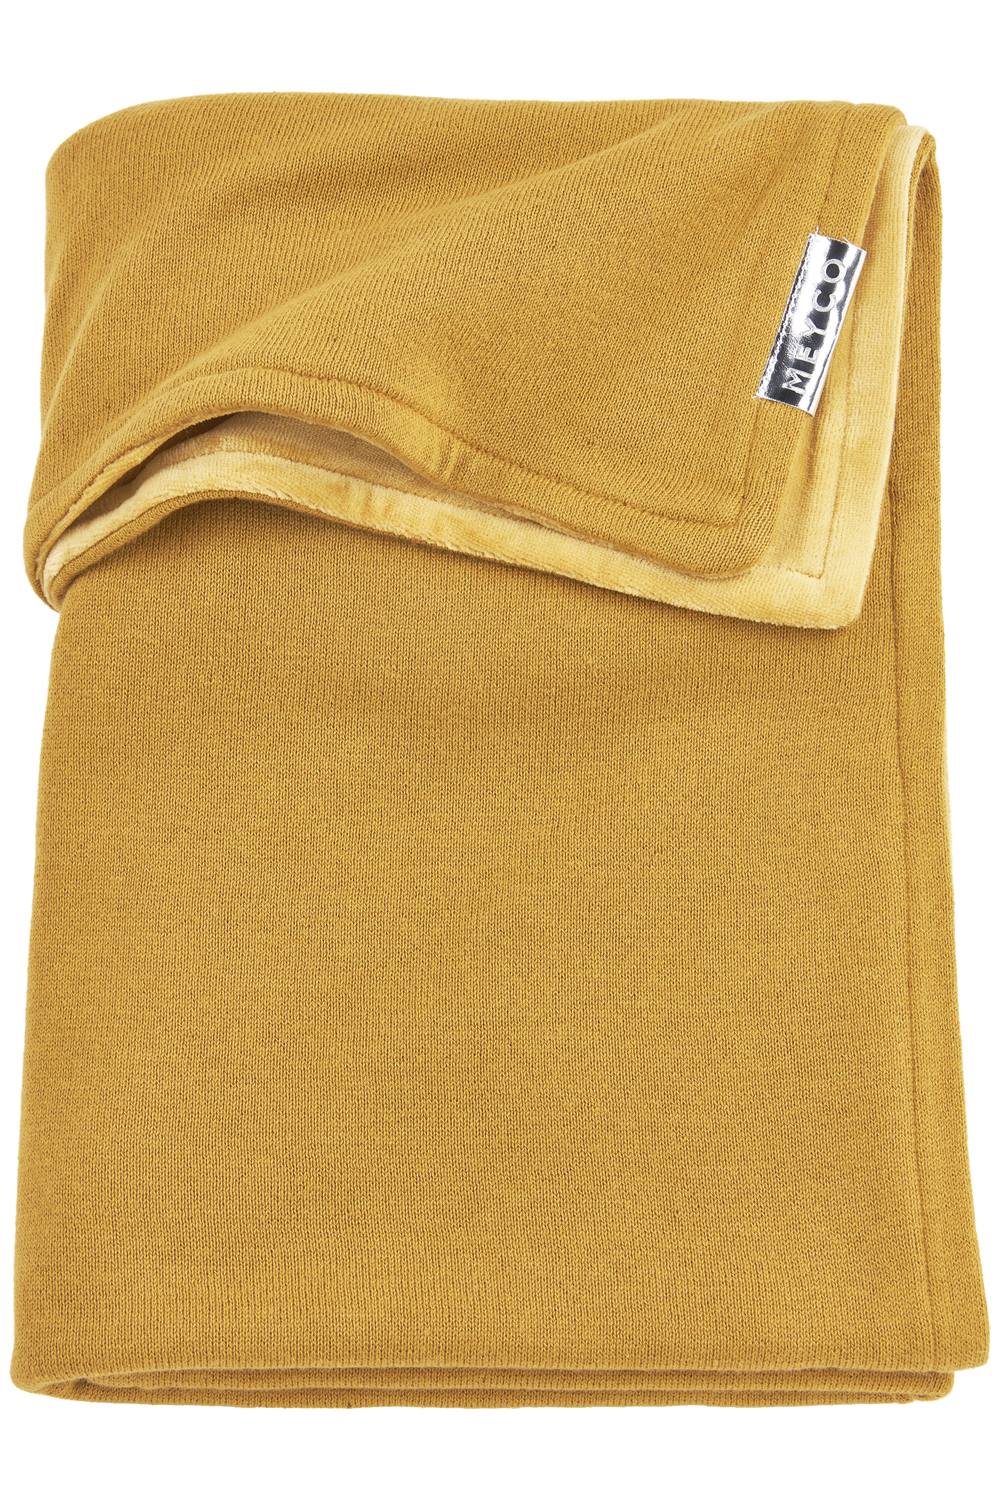 Babydecke groß Knit Basic velvet - honey gold - 100x150cm